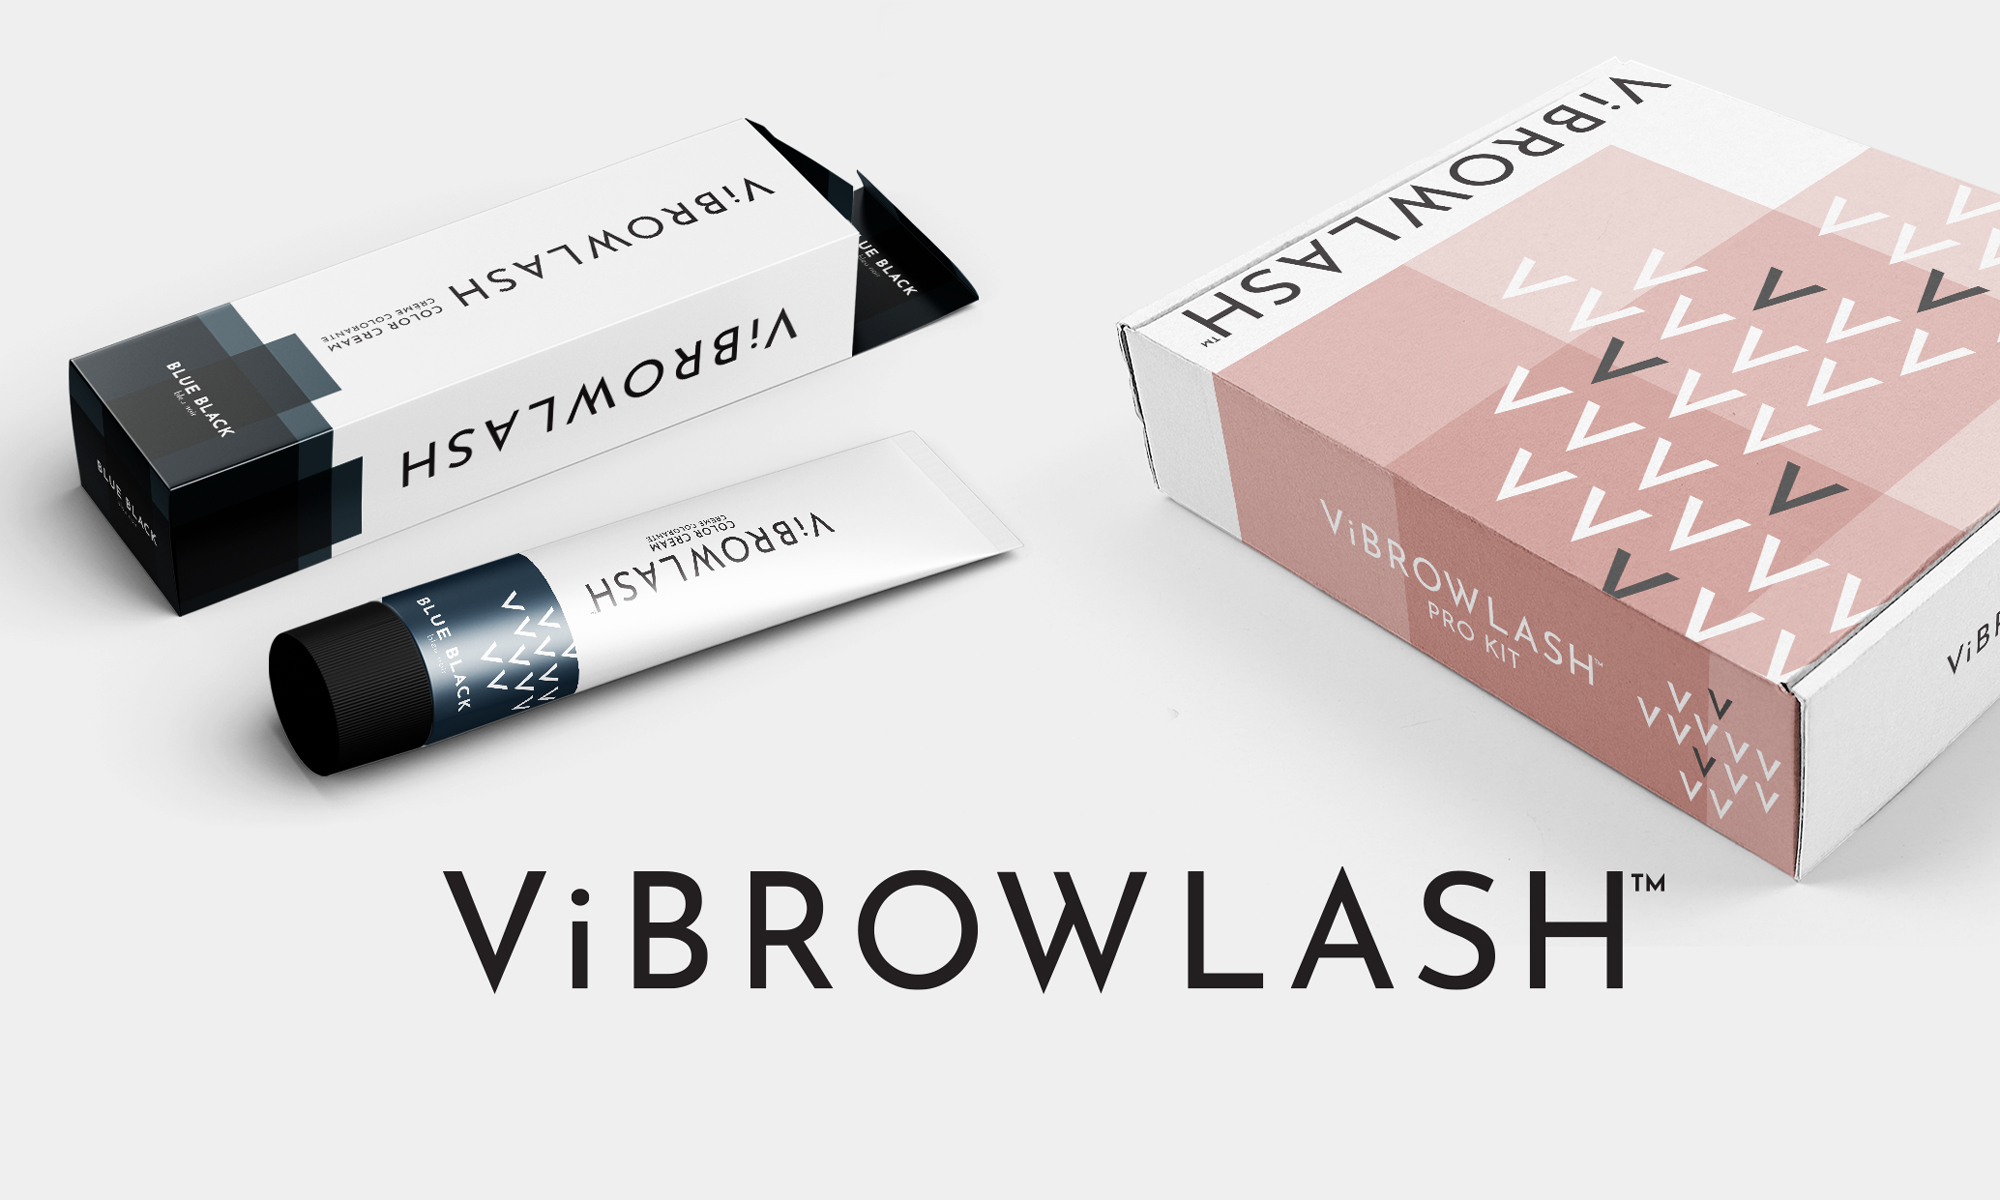 01-Branding-logo-ViBrowLash-Mizuho-logo-packaging